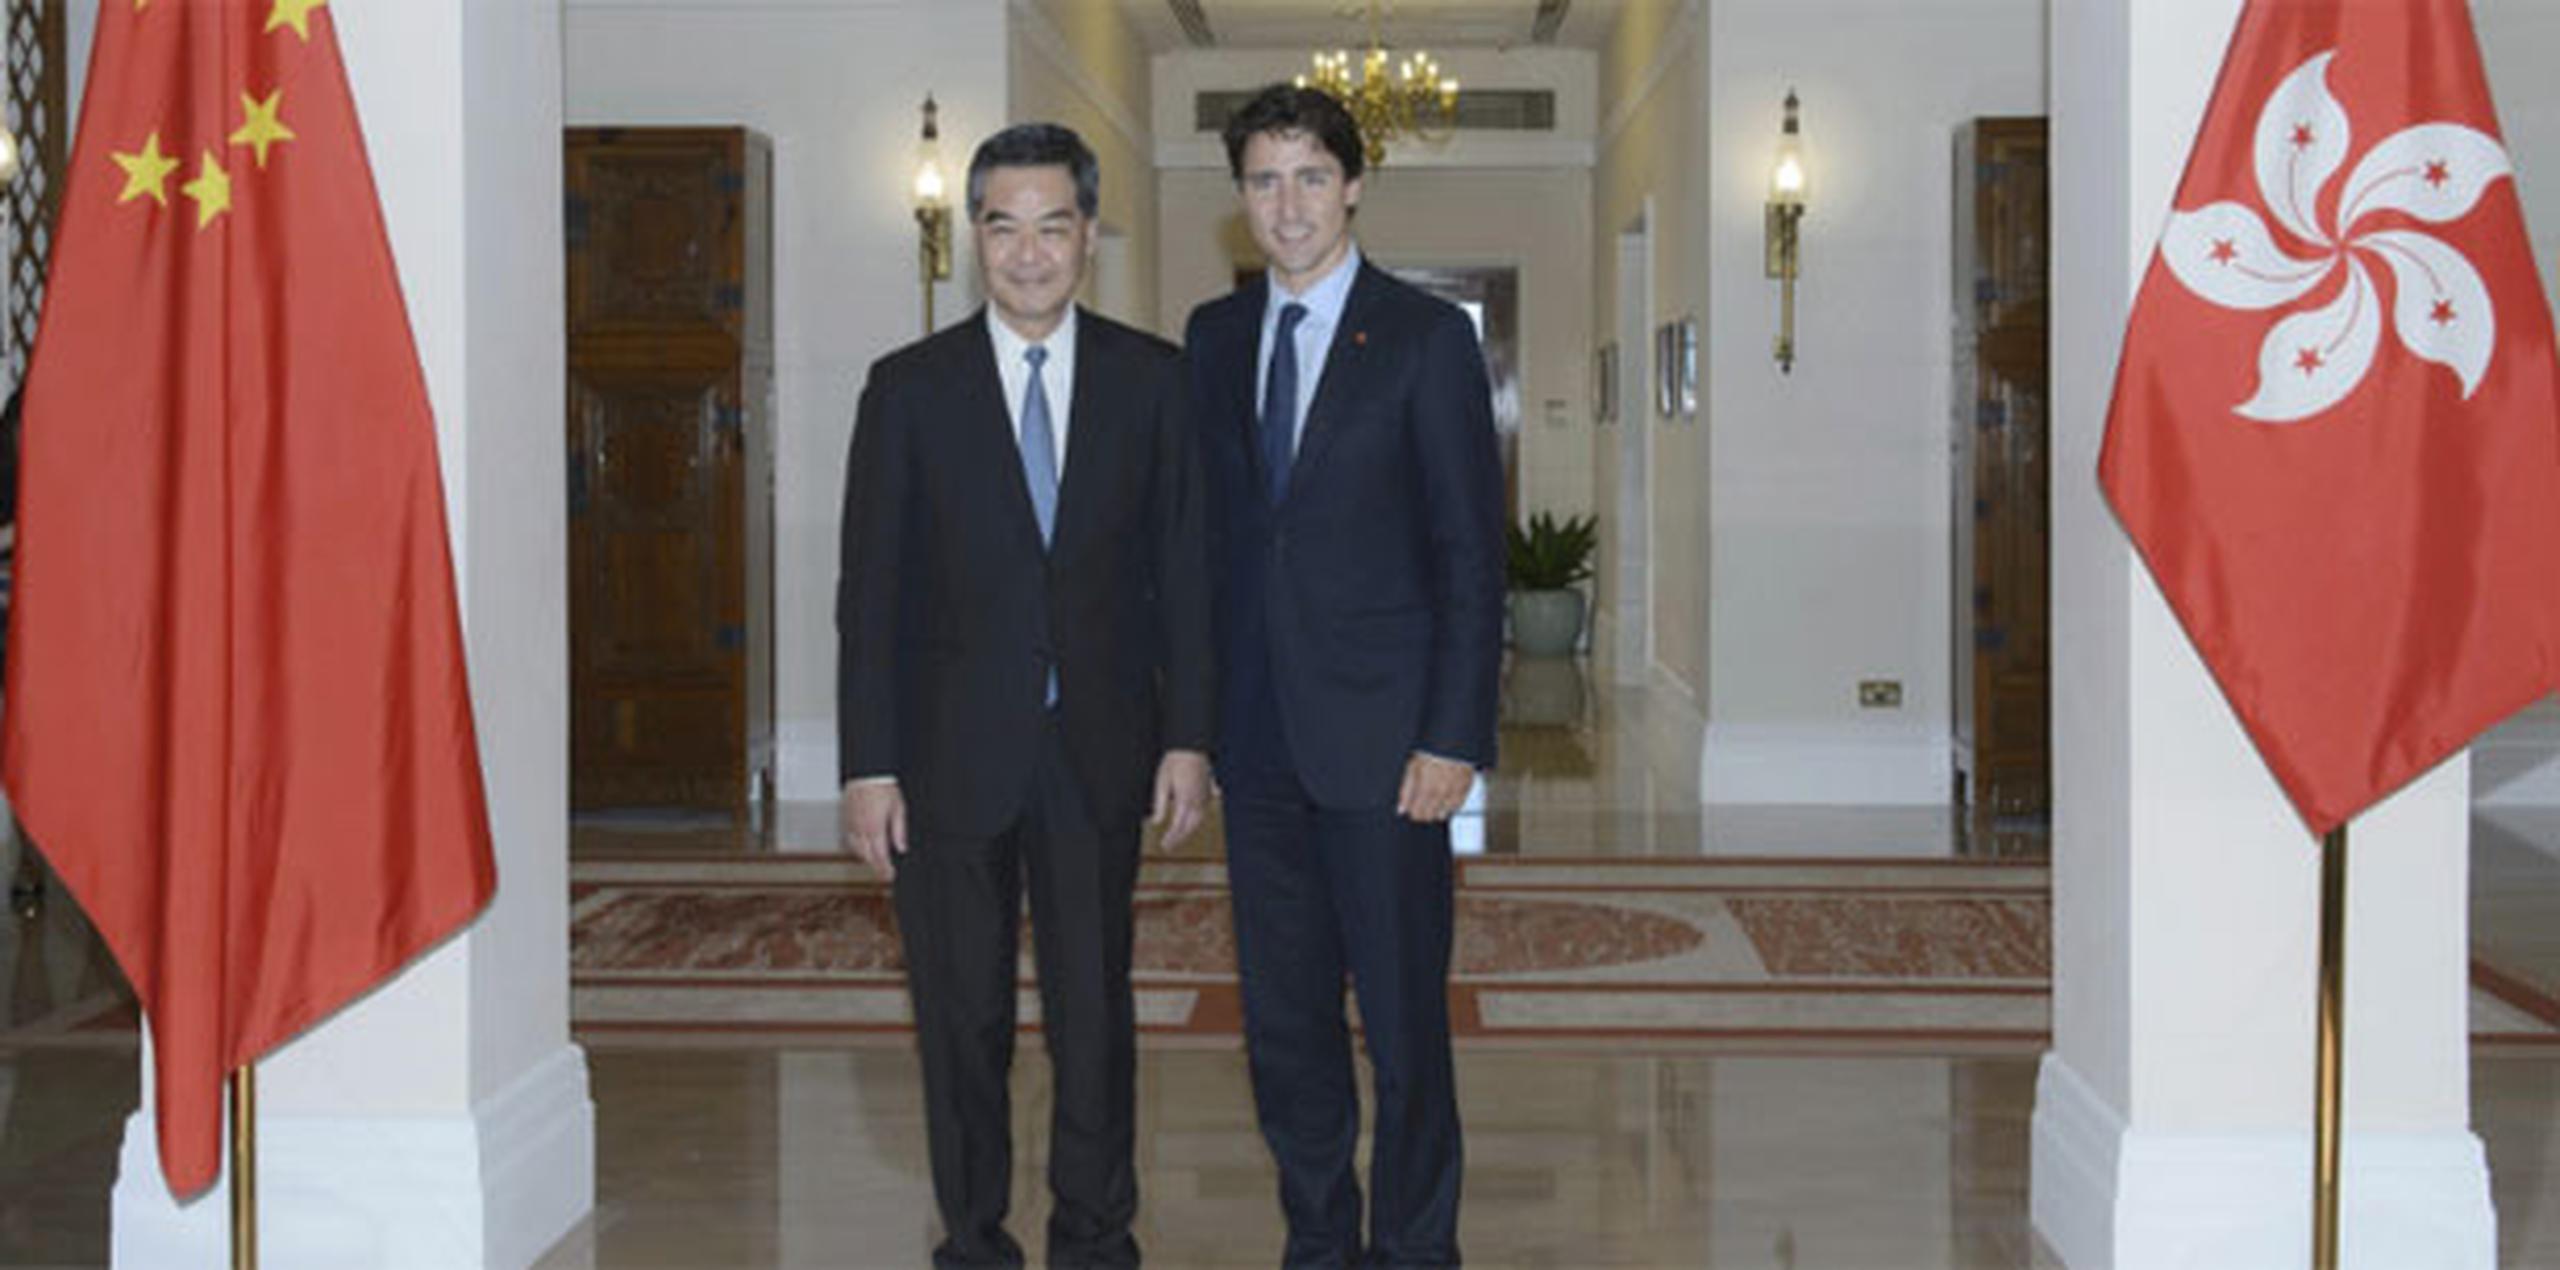 La liberación de Garratt se produce dos semanas después de que Trudeau viajó a China y una semana antes de que llegue a Canadá el primer ministro chino, Li Keqiang. (Archivo)